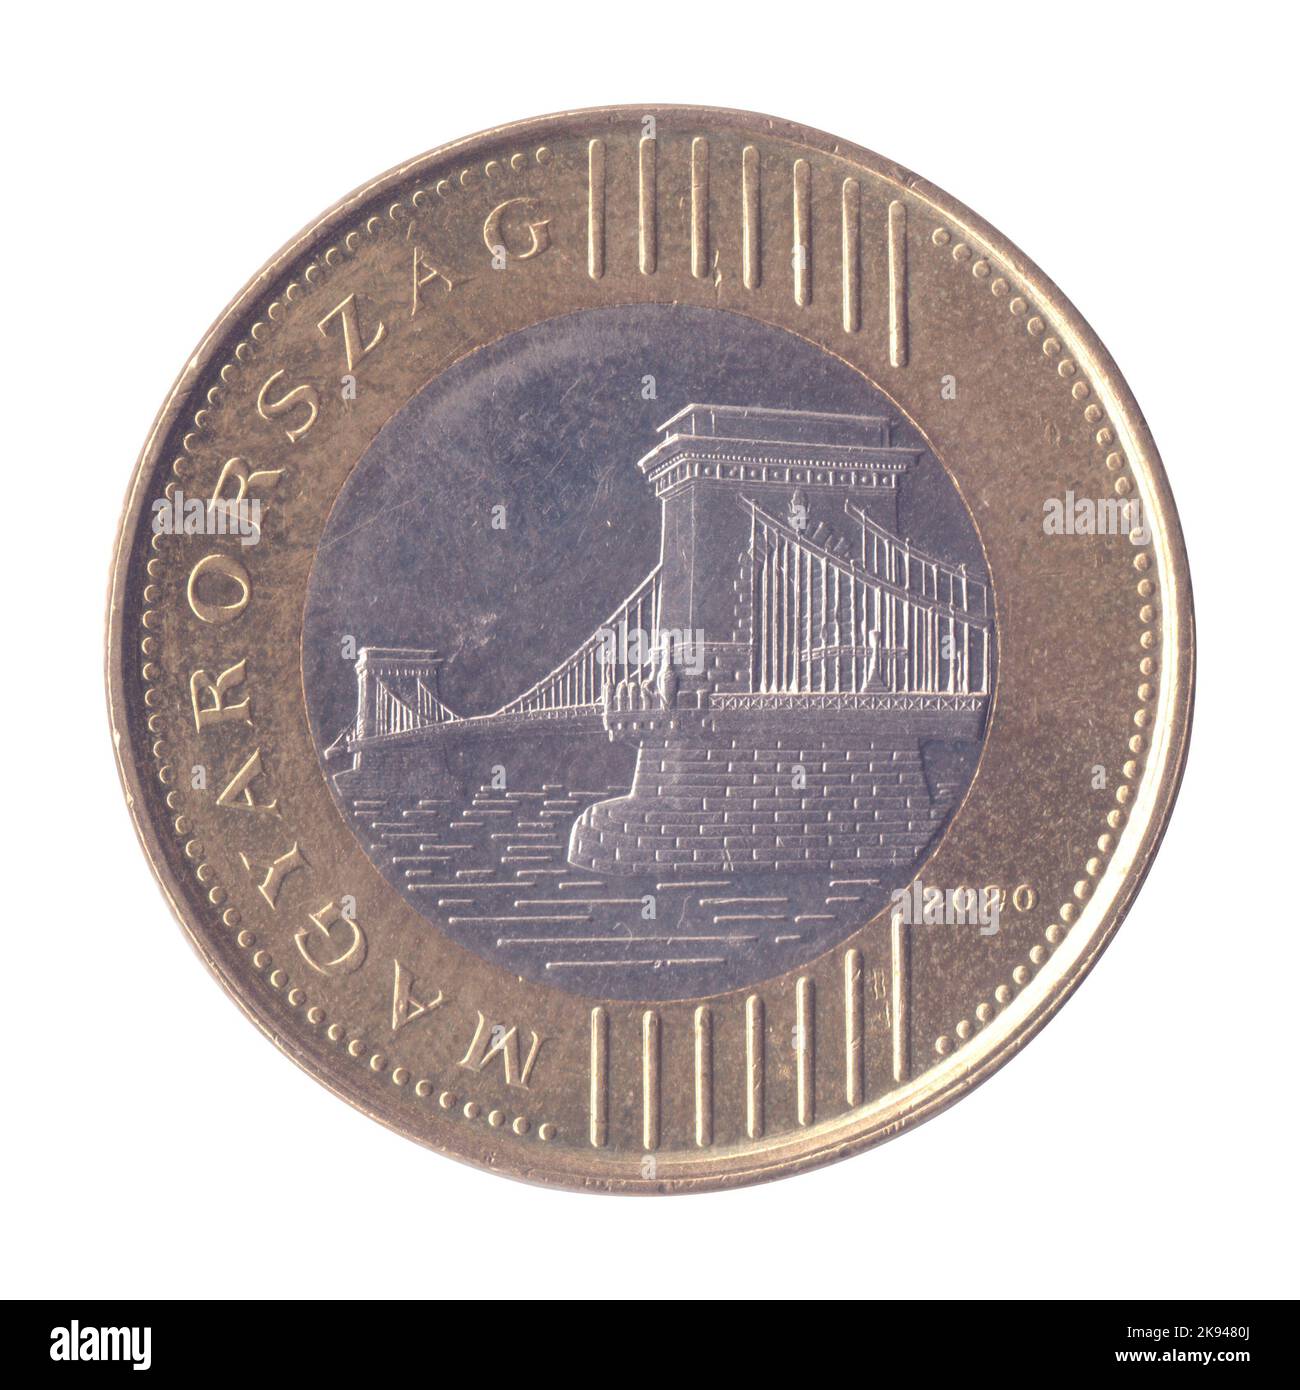 200 moneta ungherese (HUF) su sfondo bianco Foto Stock